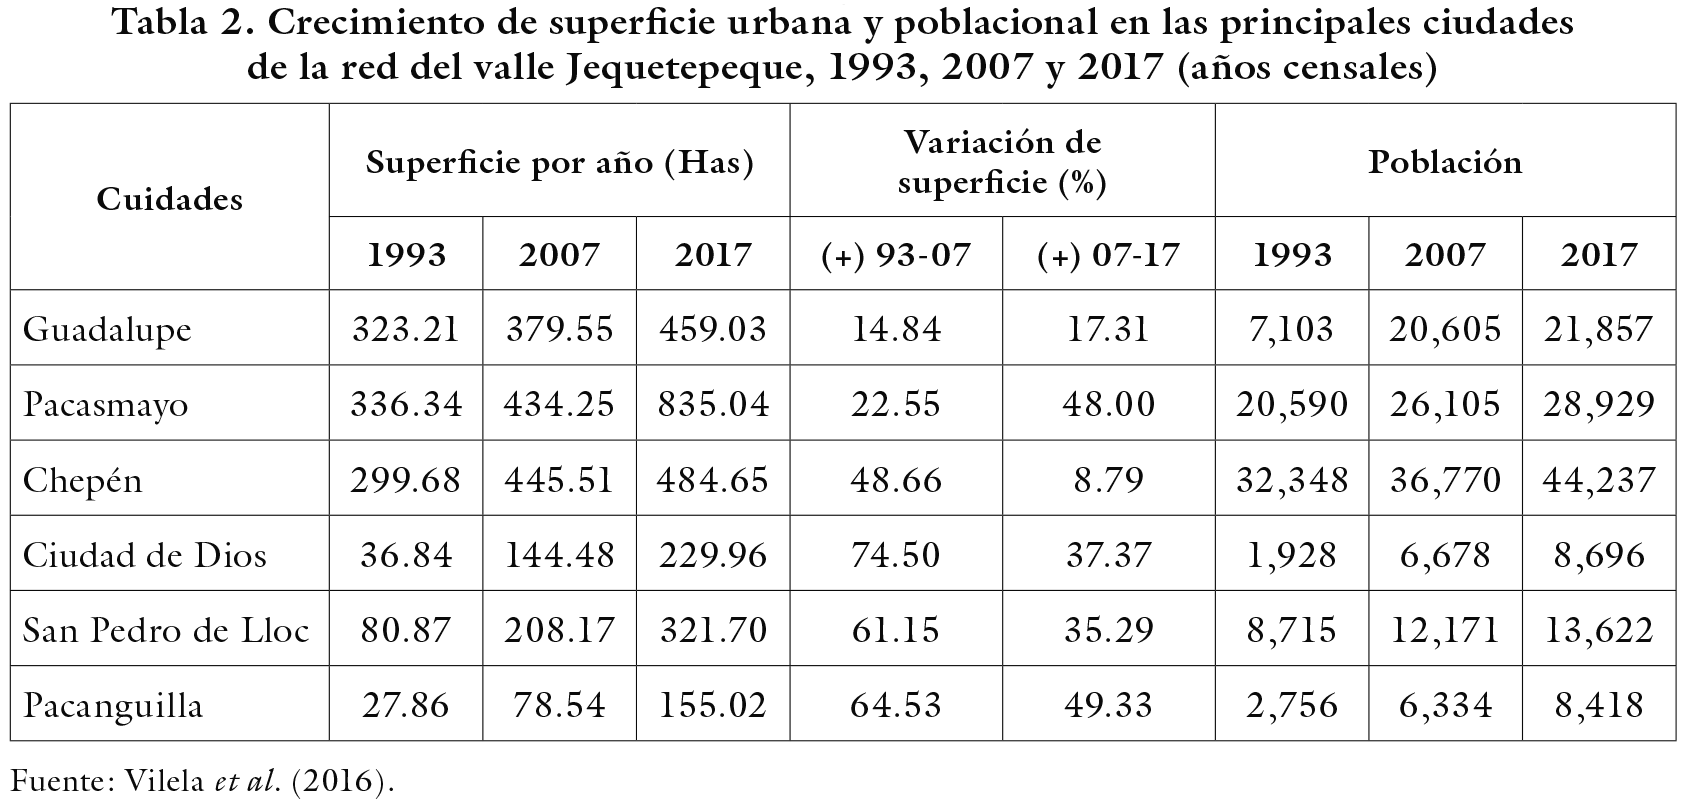 Crecimiento de superficie urbana y poblacional en las principales ciudades de la red del valle Jequetepeque, 1993, 2007 y 2017 (años censales)